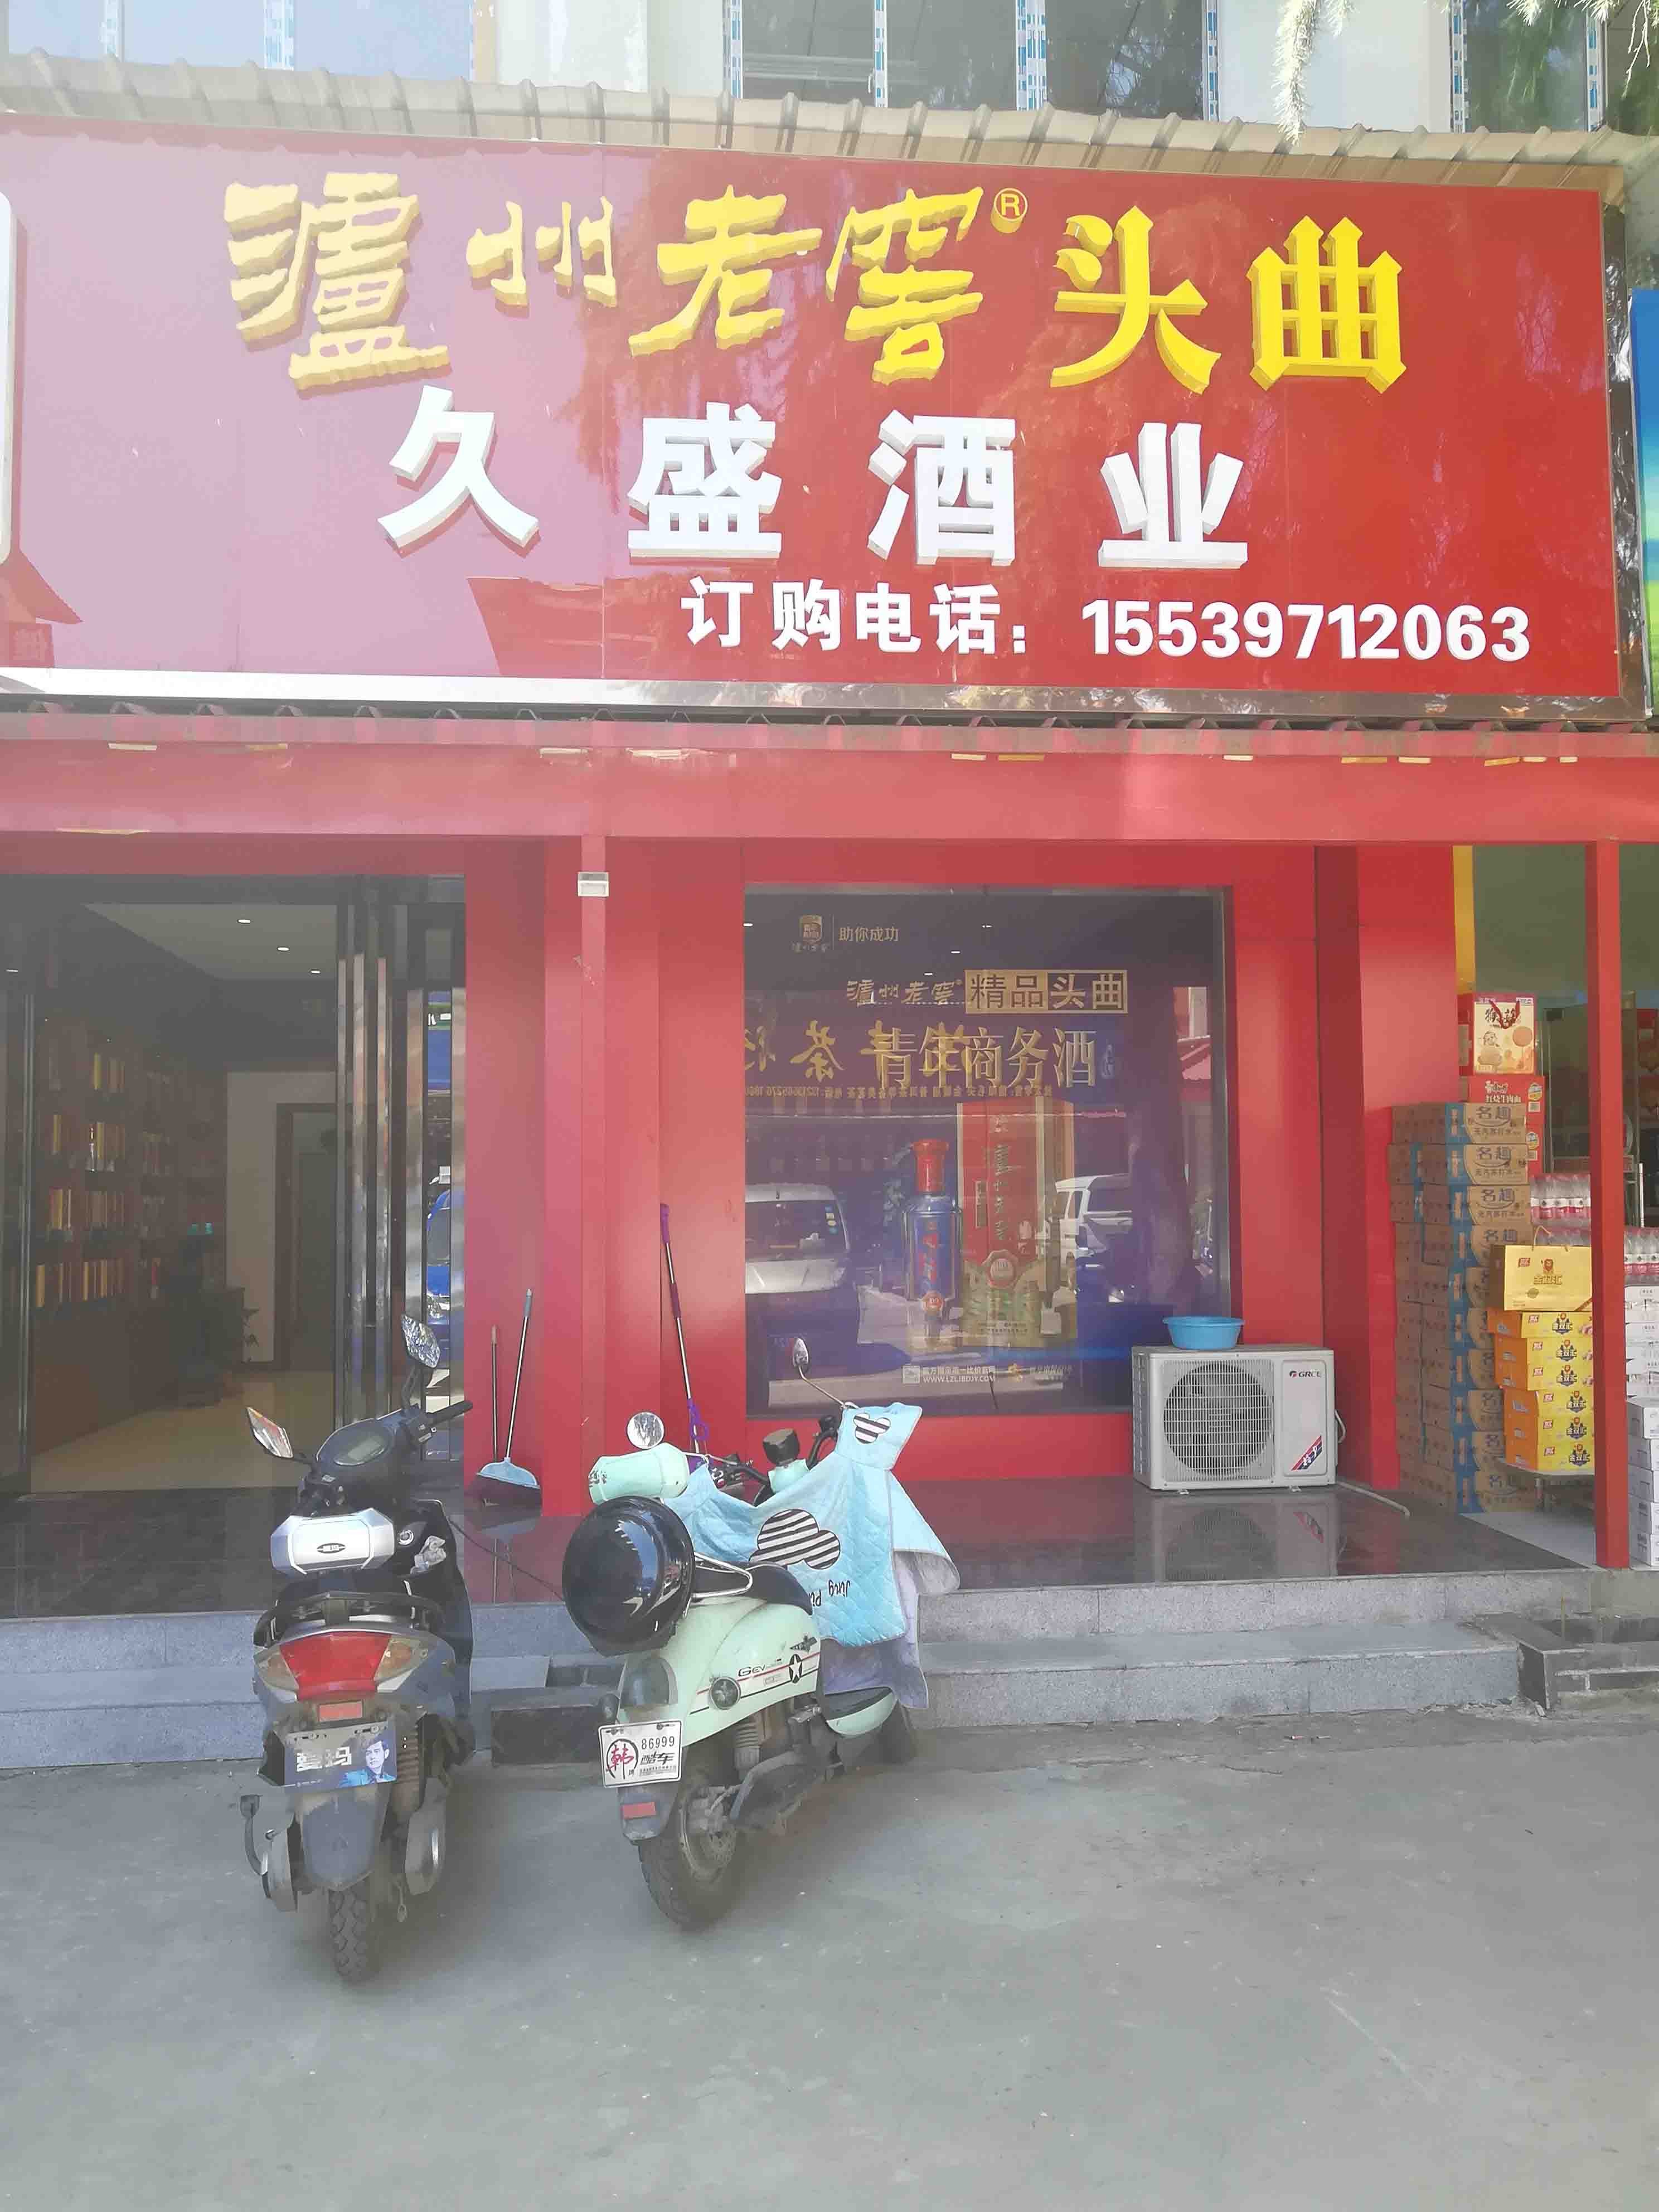 上海市场北街在洛阳出租高端写字楼，专注于寻求办公环境的企业和企业家设计。我们提供豪华写字楼，保证您的商务需求得到满足